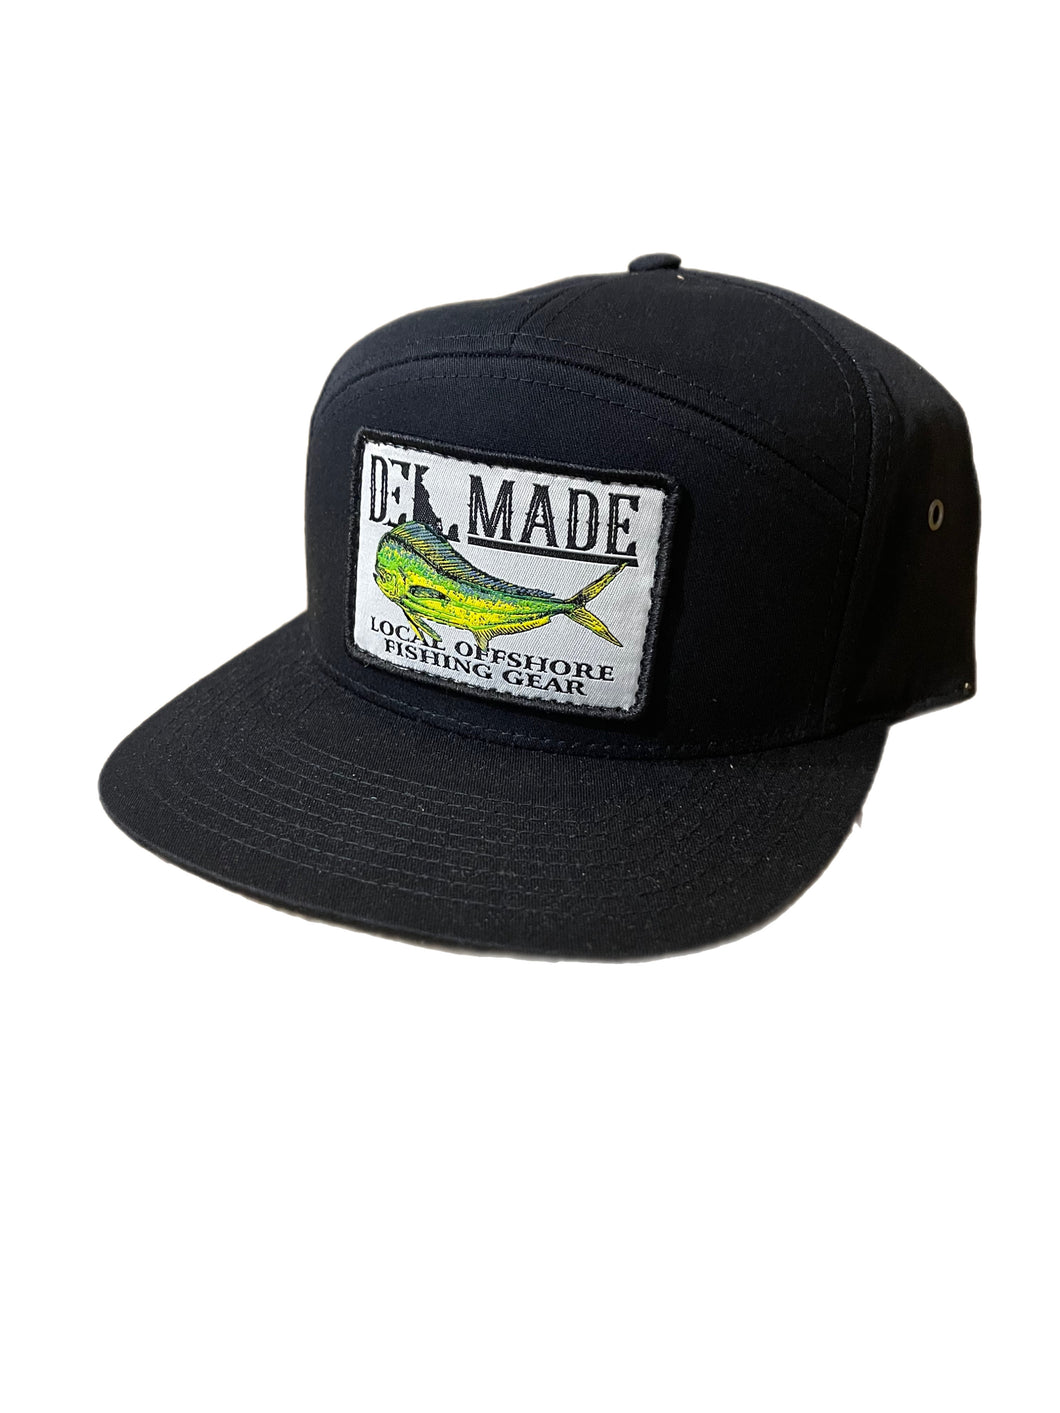 DEL Made SnapBack Flat Brim Hat